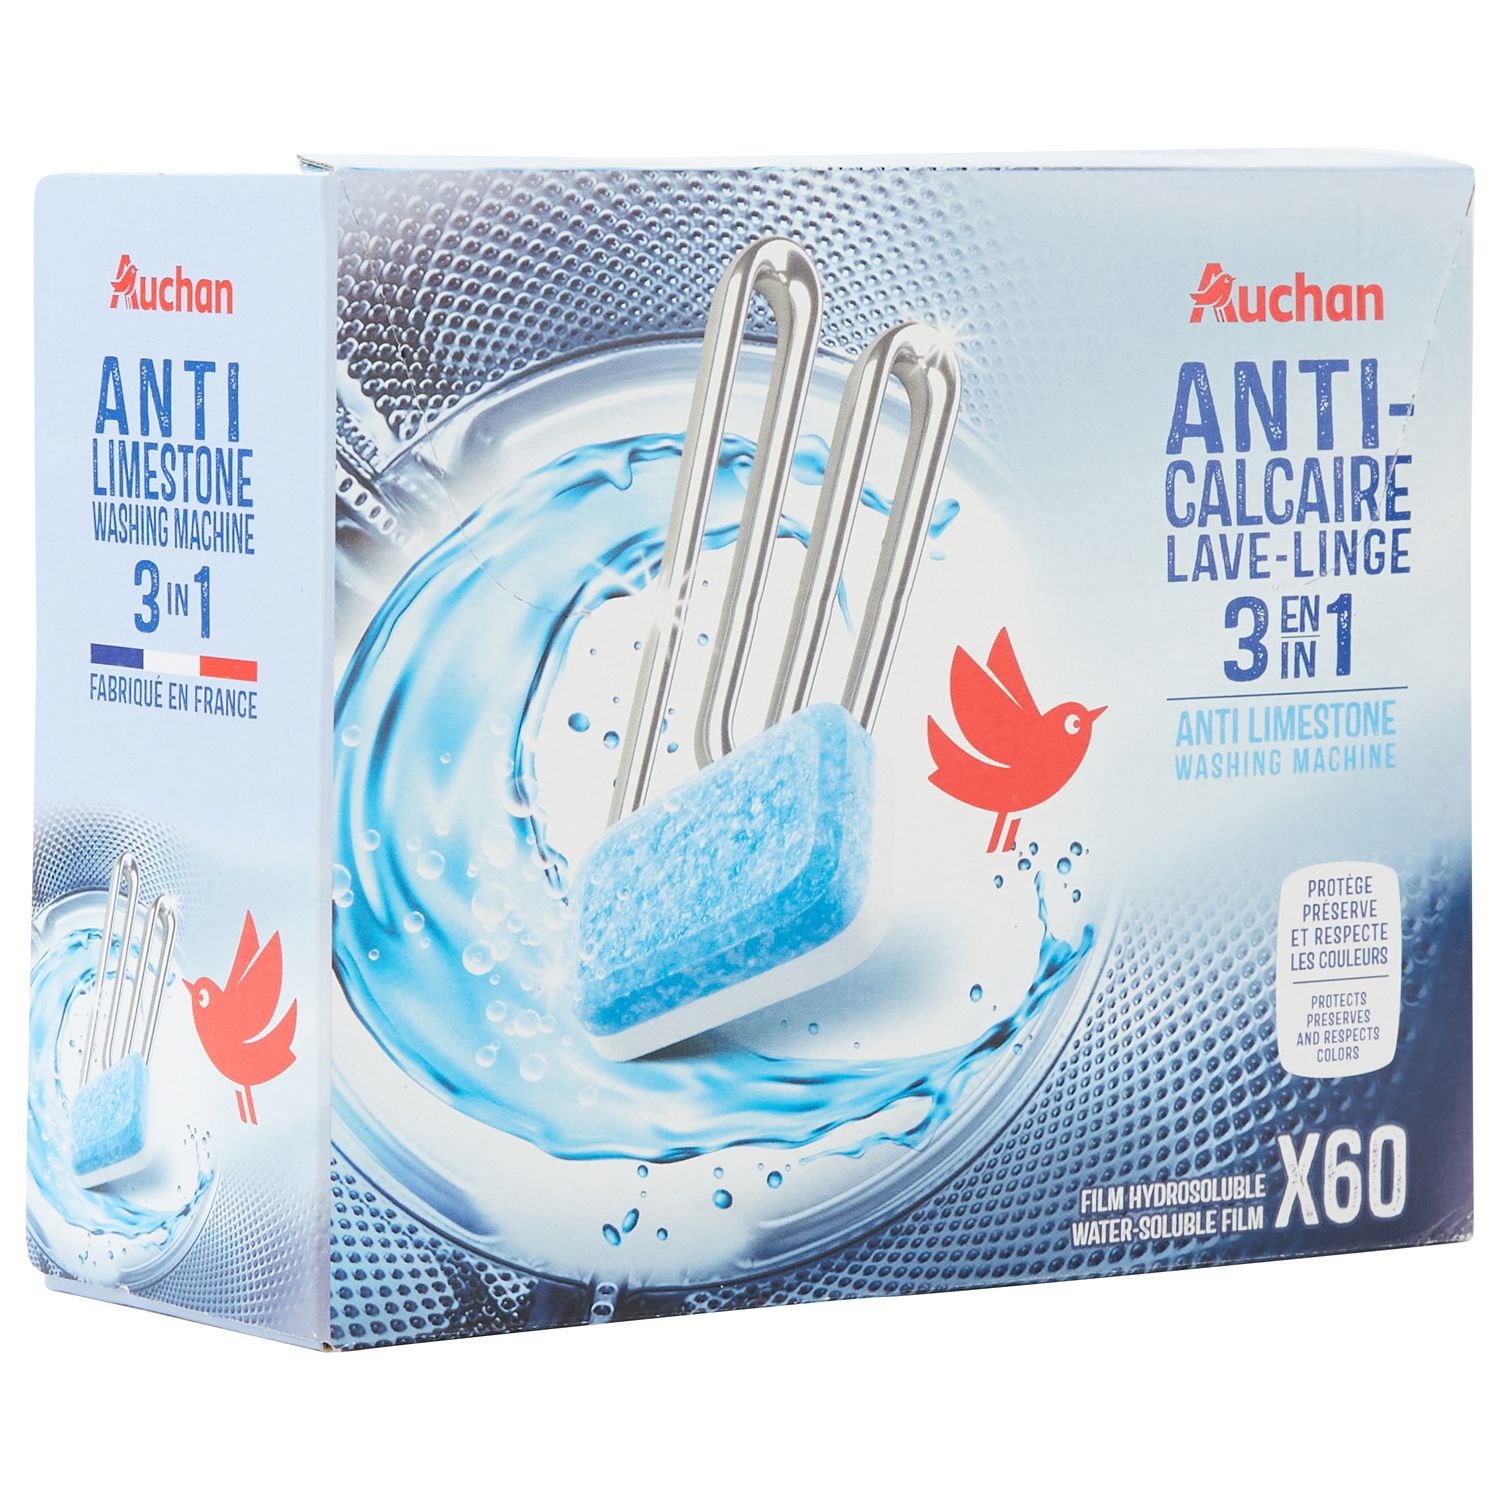 AUCHAN Auchan Pastilles anti-calcaire lave-linge x60 60 lavages 60  pastilles pas cher 